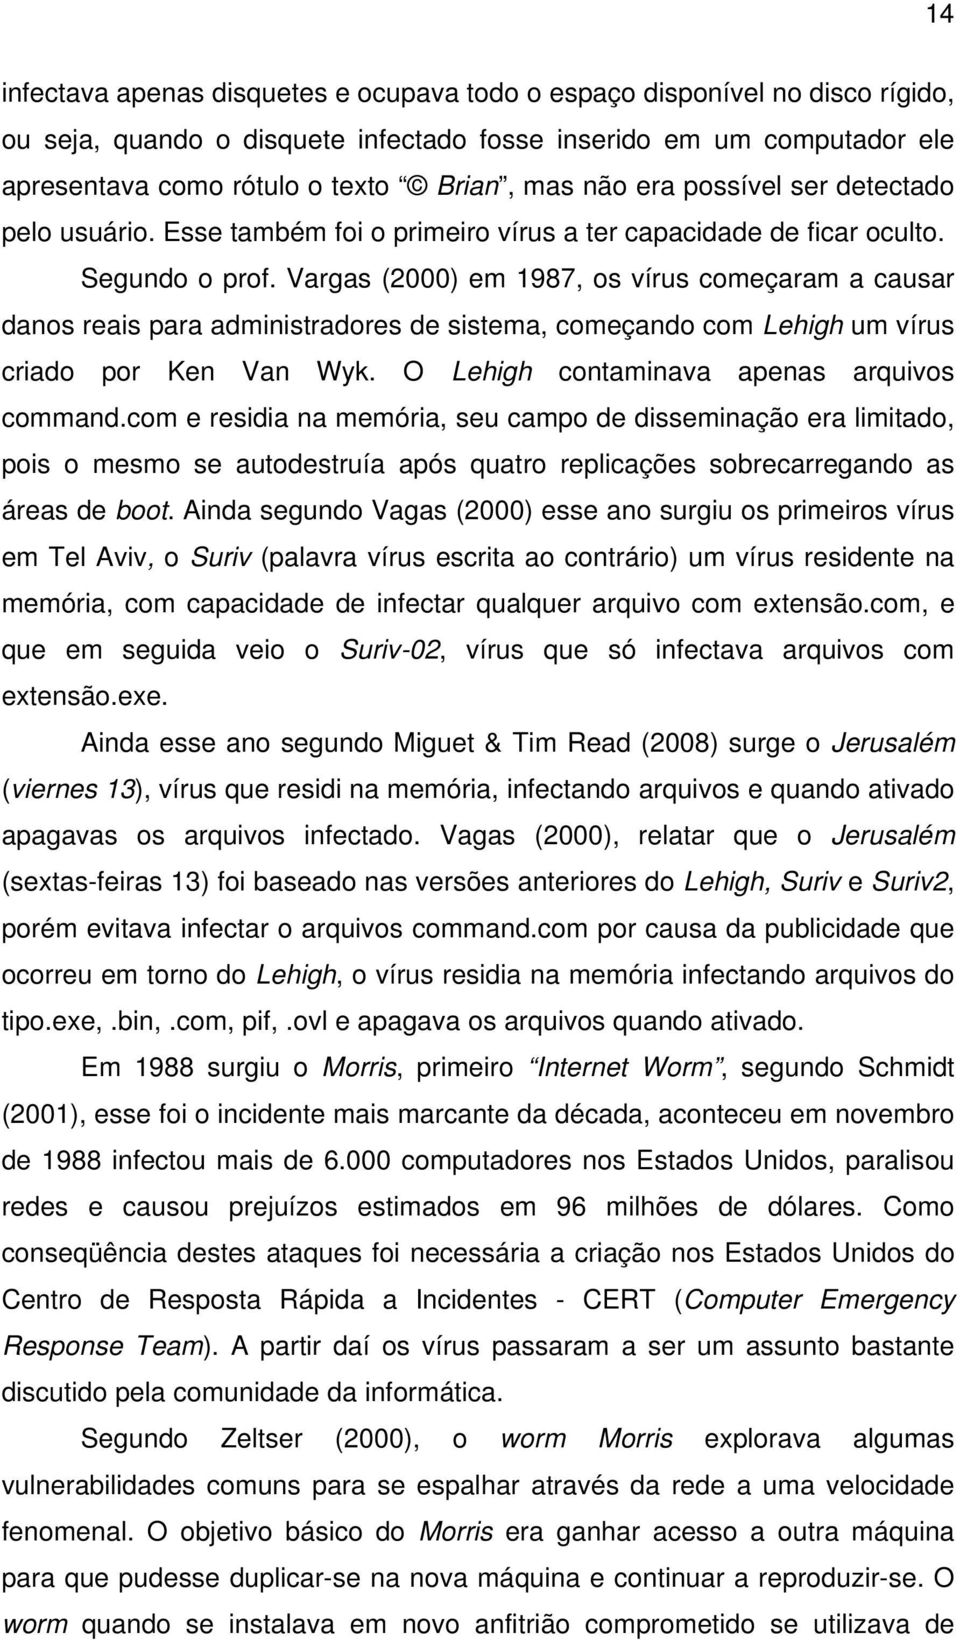 Vargas (2000) em 1987, os vírus começaram a causar danos reais para administradores de sistema, começando com Lehigh um vírus criado por Ken Van Wyk. O Lehigh contaminava apenas arquivos command.